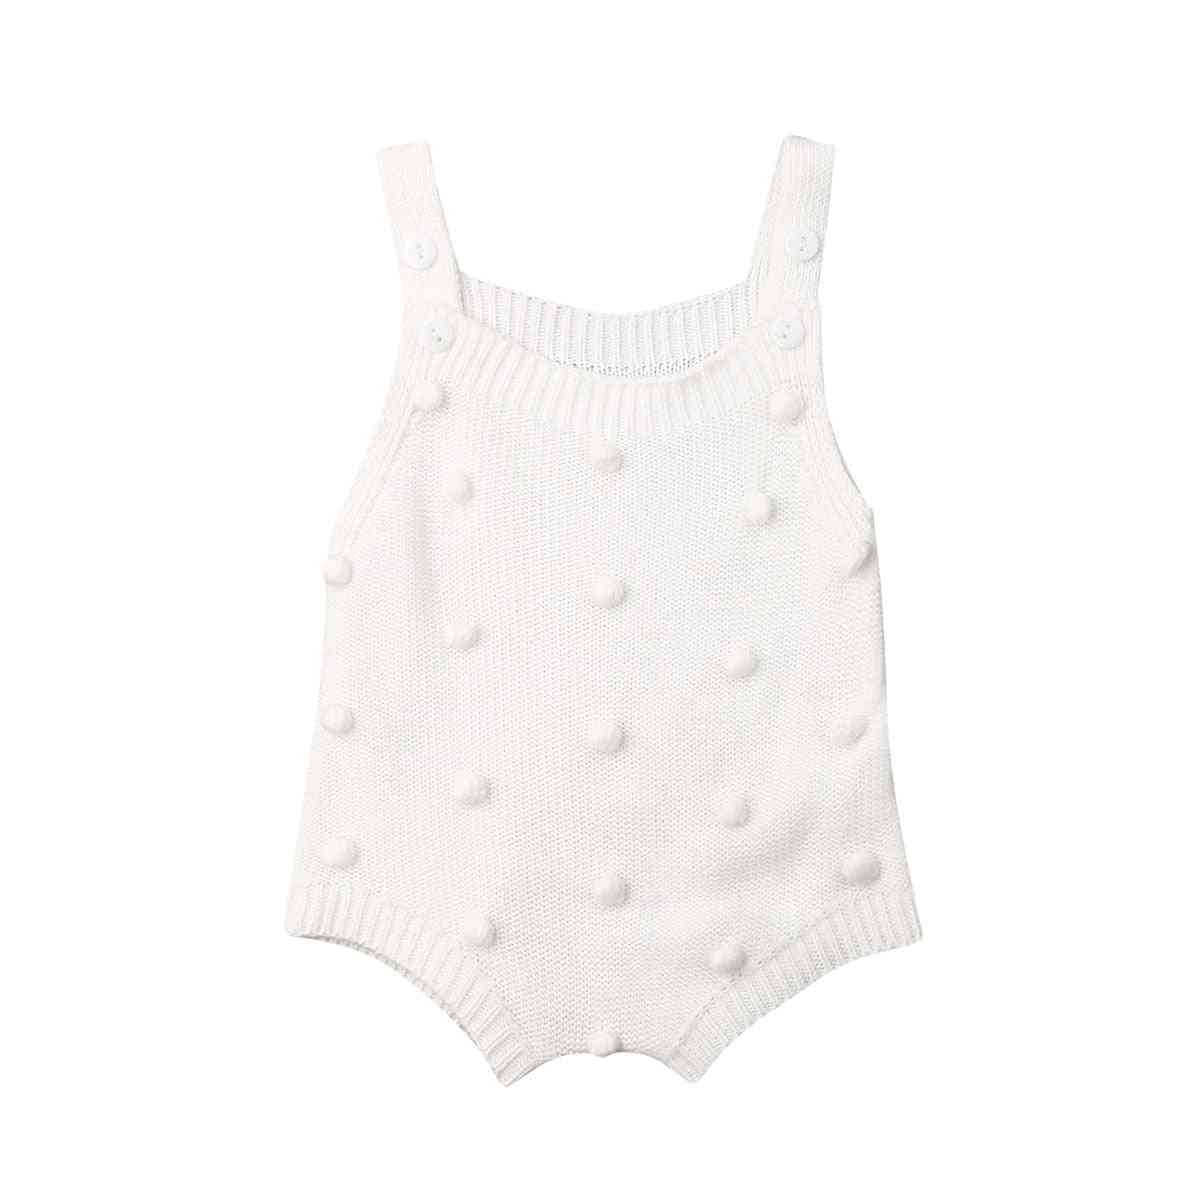 Kombinezon za pletene točkice za novorođenče - odijelo od punog pamuka bez rukava